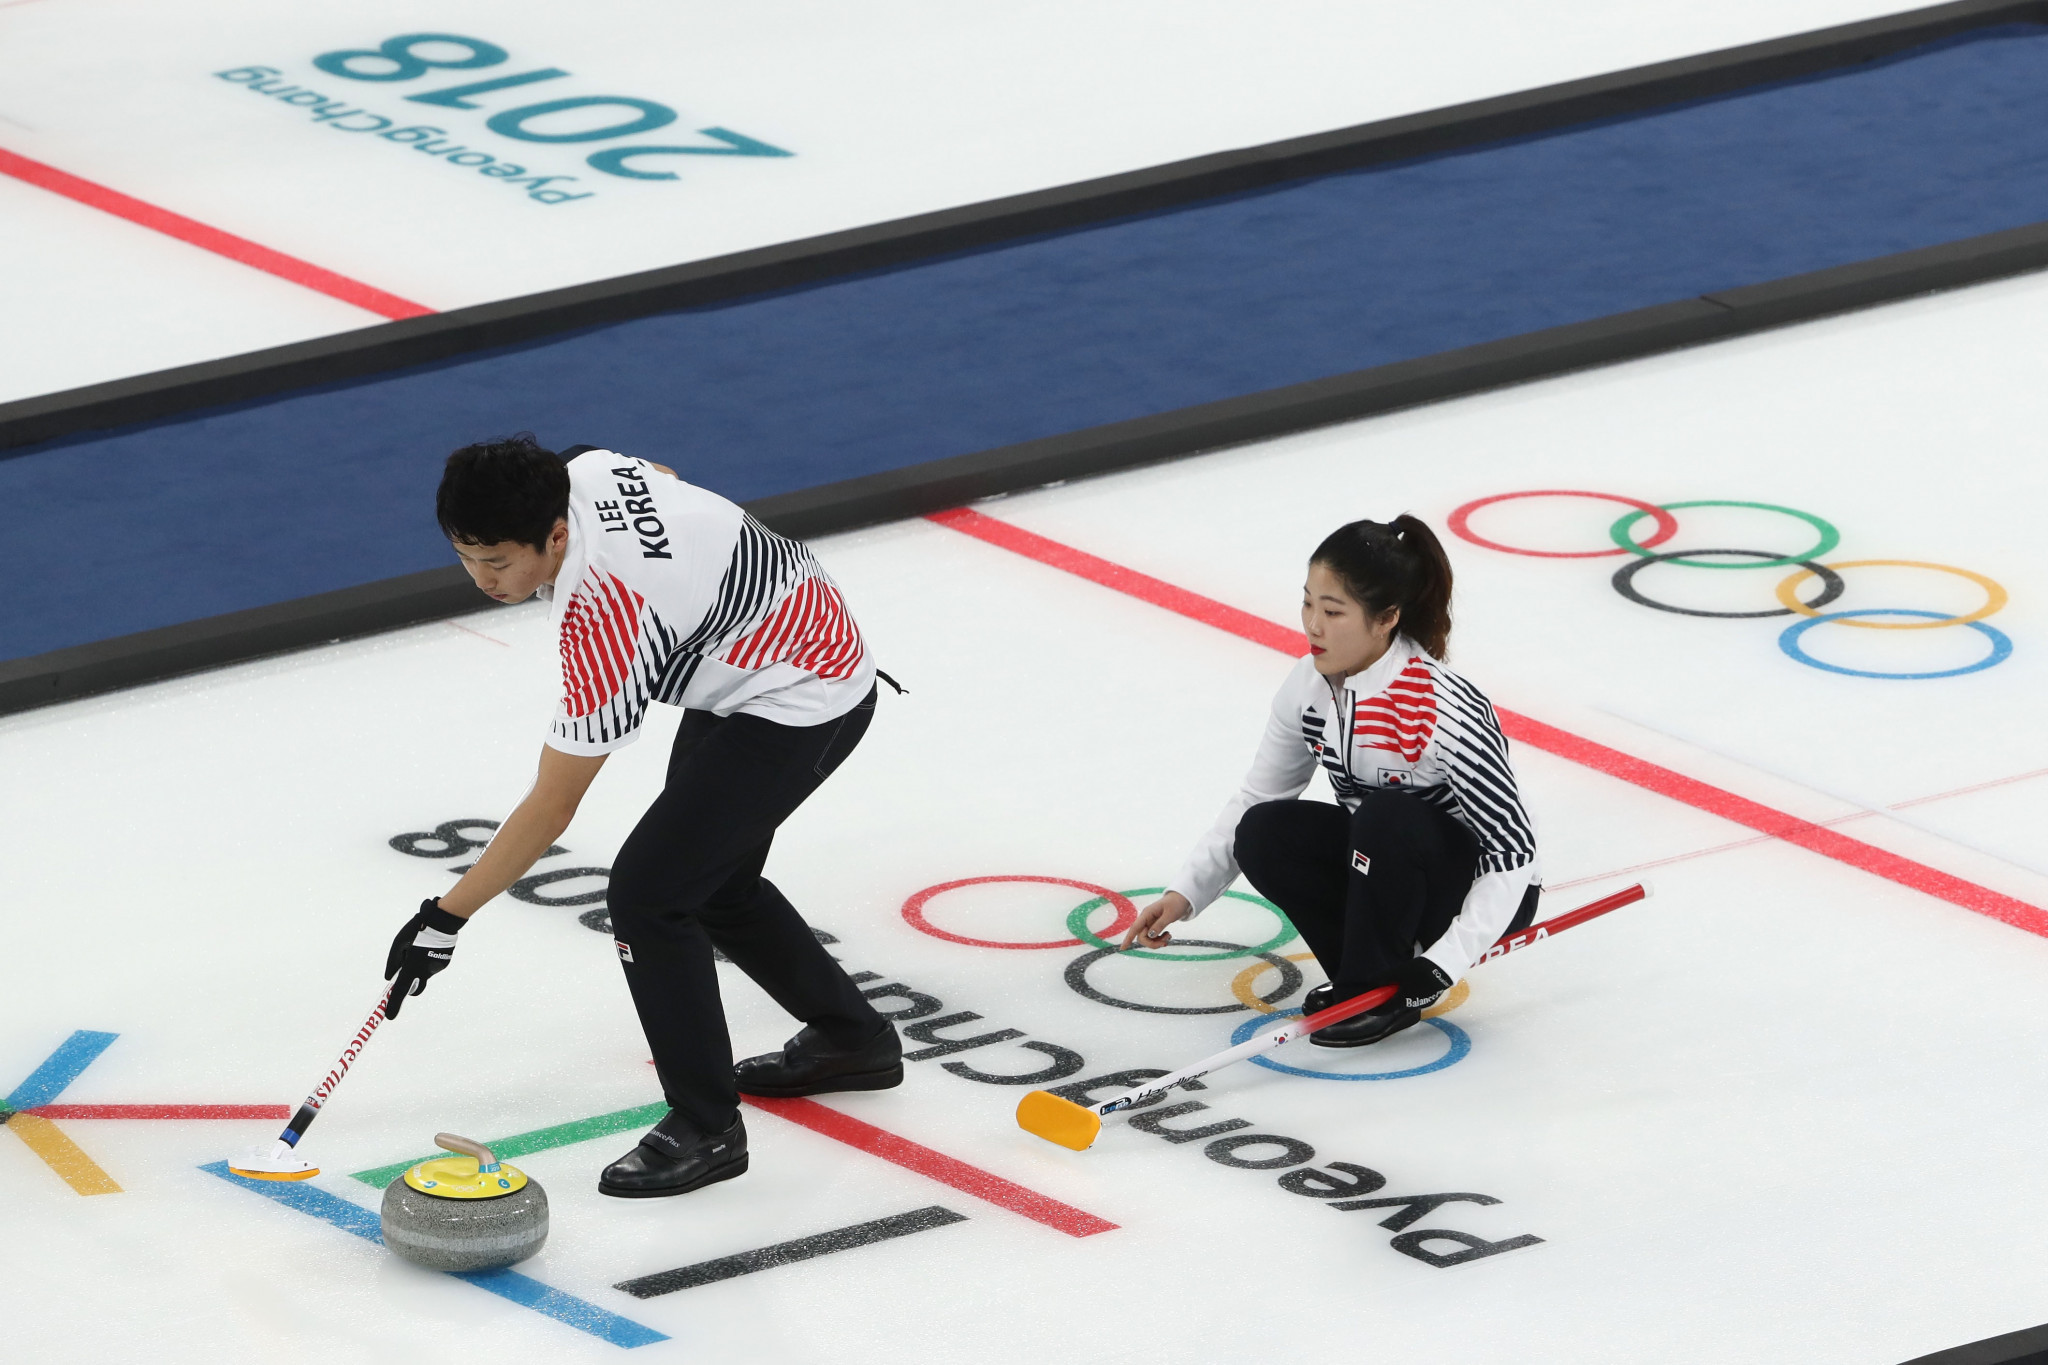 Jang Ban-seok coached the mixed doubles team at Pyeongchang 2018 ©Getty Images